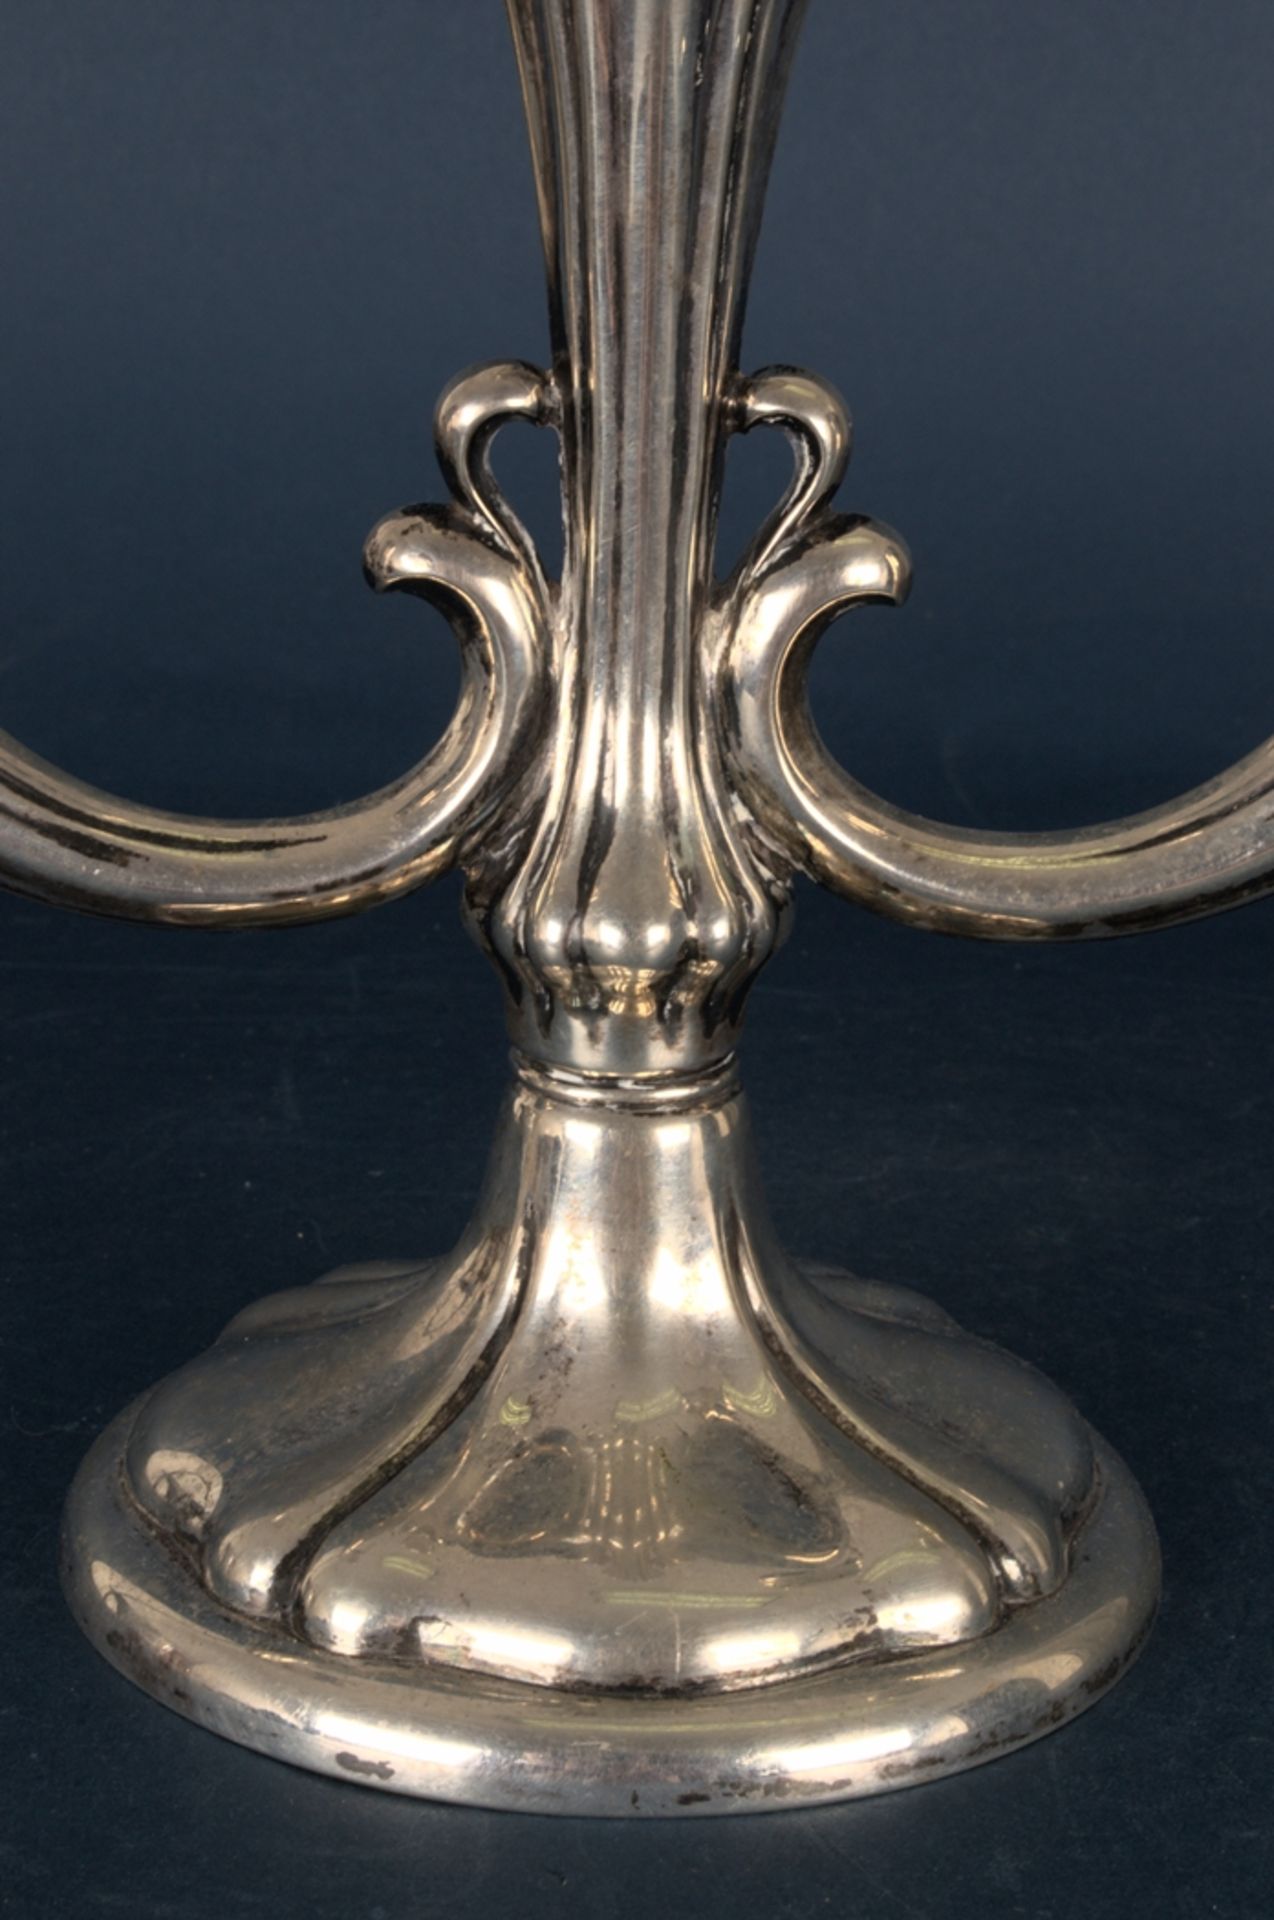 3armiger Tischkerzenleuchter, 1930er/40er Jahre, ca. 560 gr. 835er Silber. Höhe ca. 22 cm, Länge ca. - Bild 3 aus 9